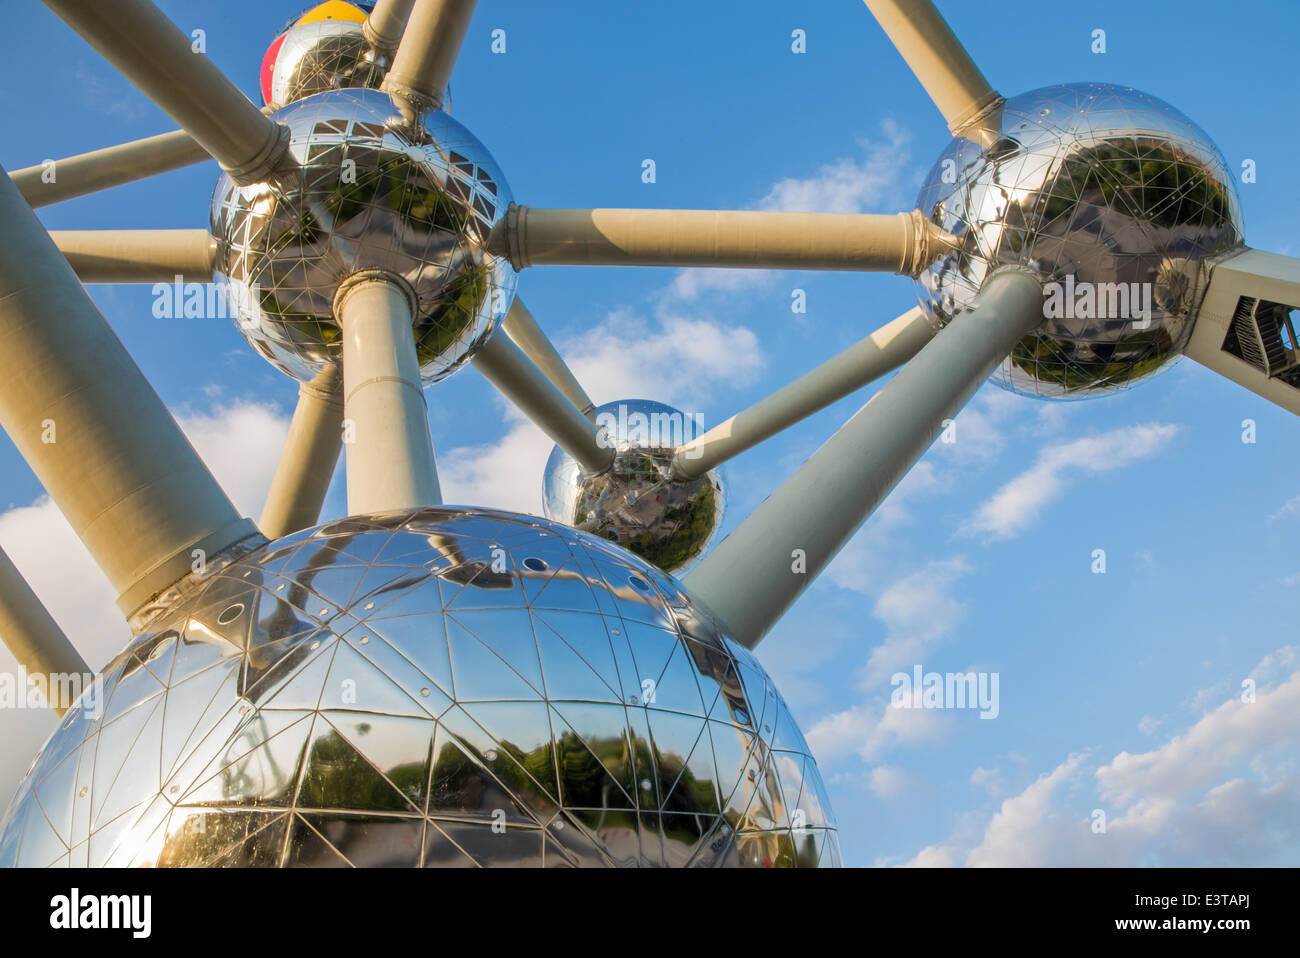 Brüssel, Belgien - 16. Juni 2014: Detail des Atomiums. Moderne Gebäude wurde ursprünglich für die Expo 58 gebaut. Stockfoto